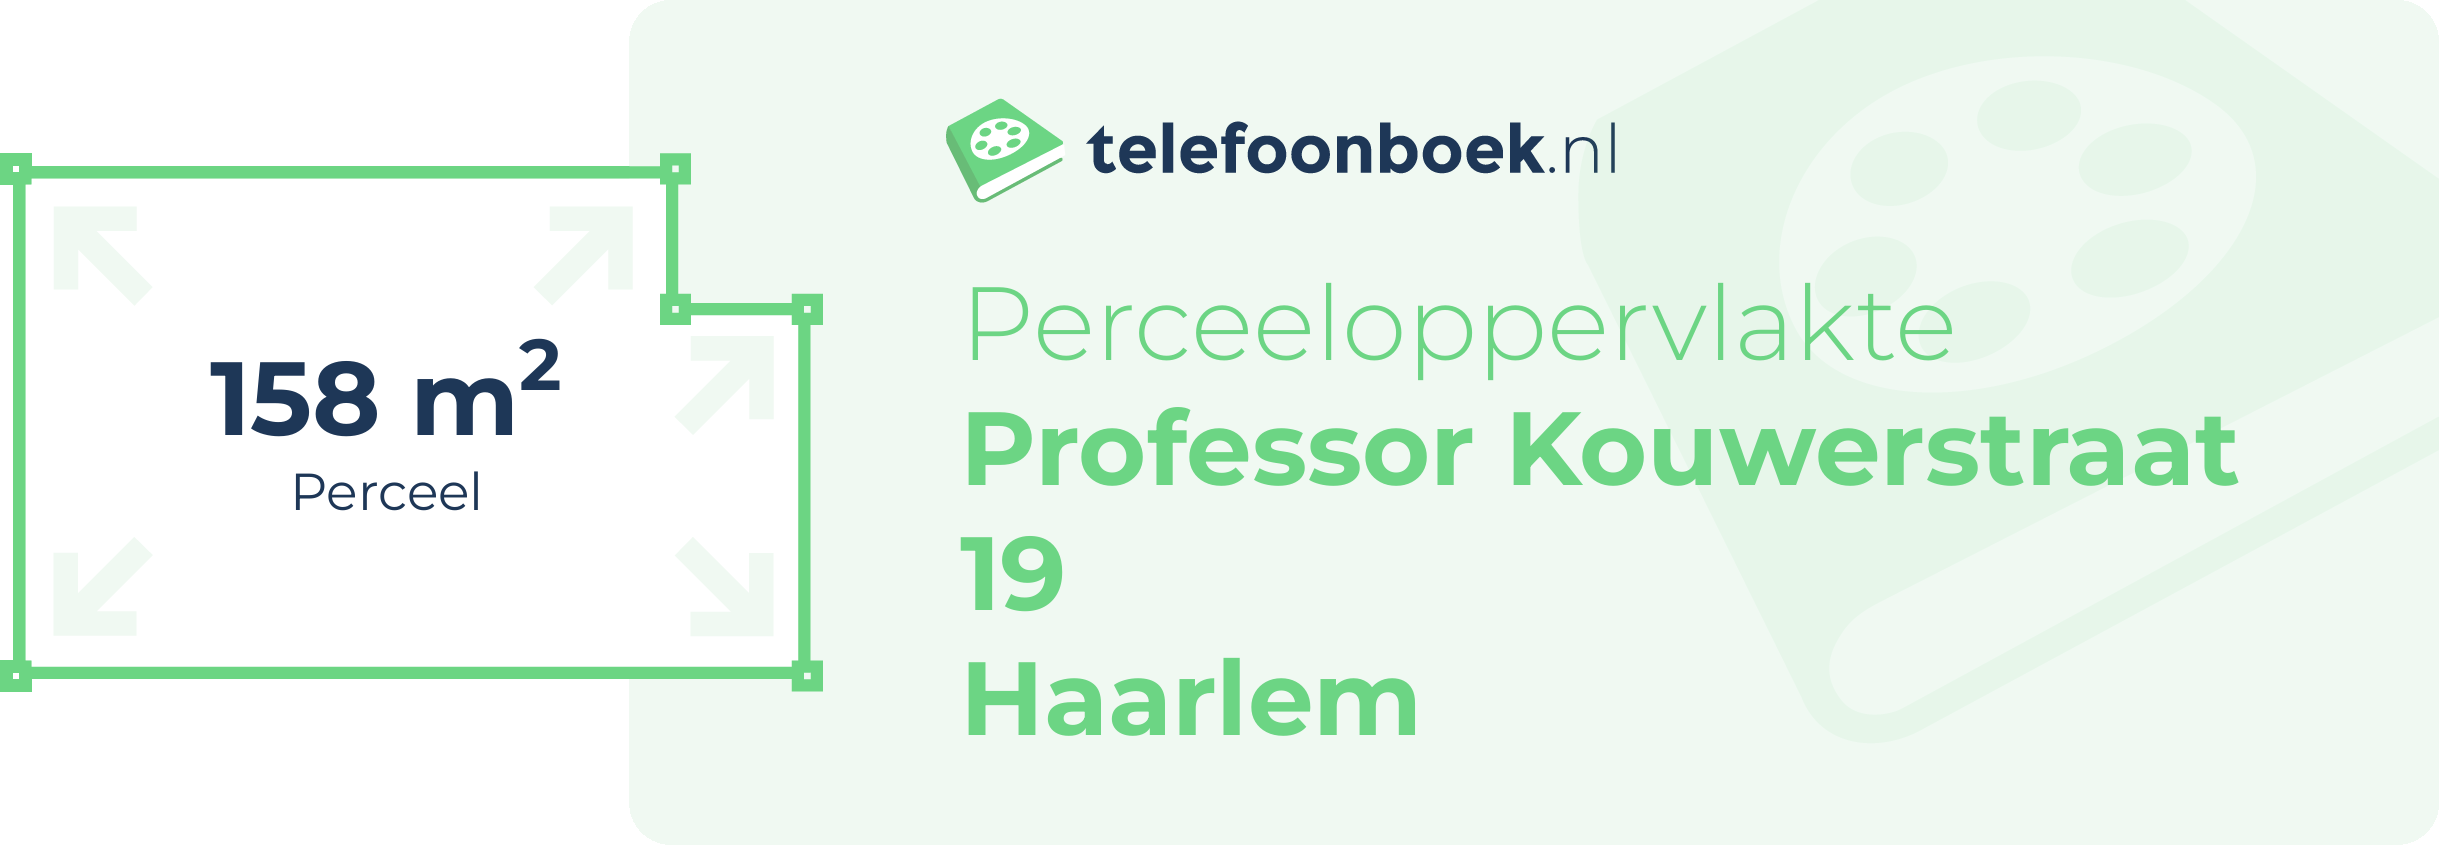 Perceeloppervlakte Professor Kouwerstraat 19 Haarlem